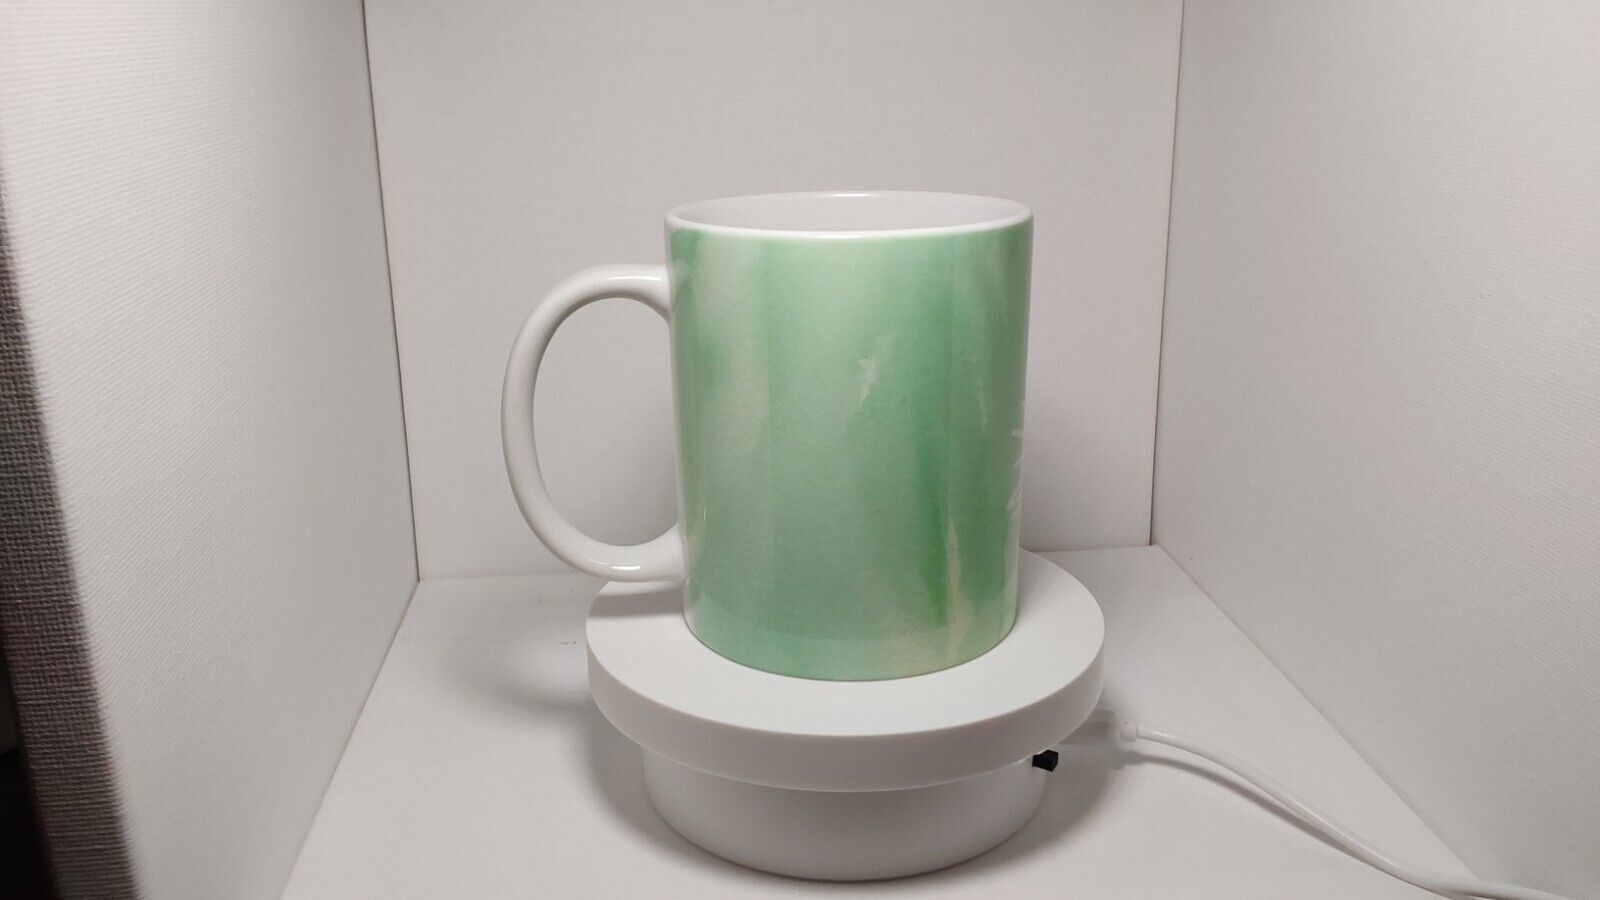 Handmade- Fun Green Watercolor- colorful coffee tea mug - New - Dishwasher Safe